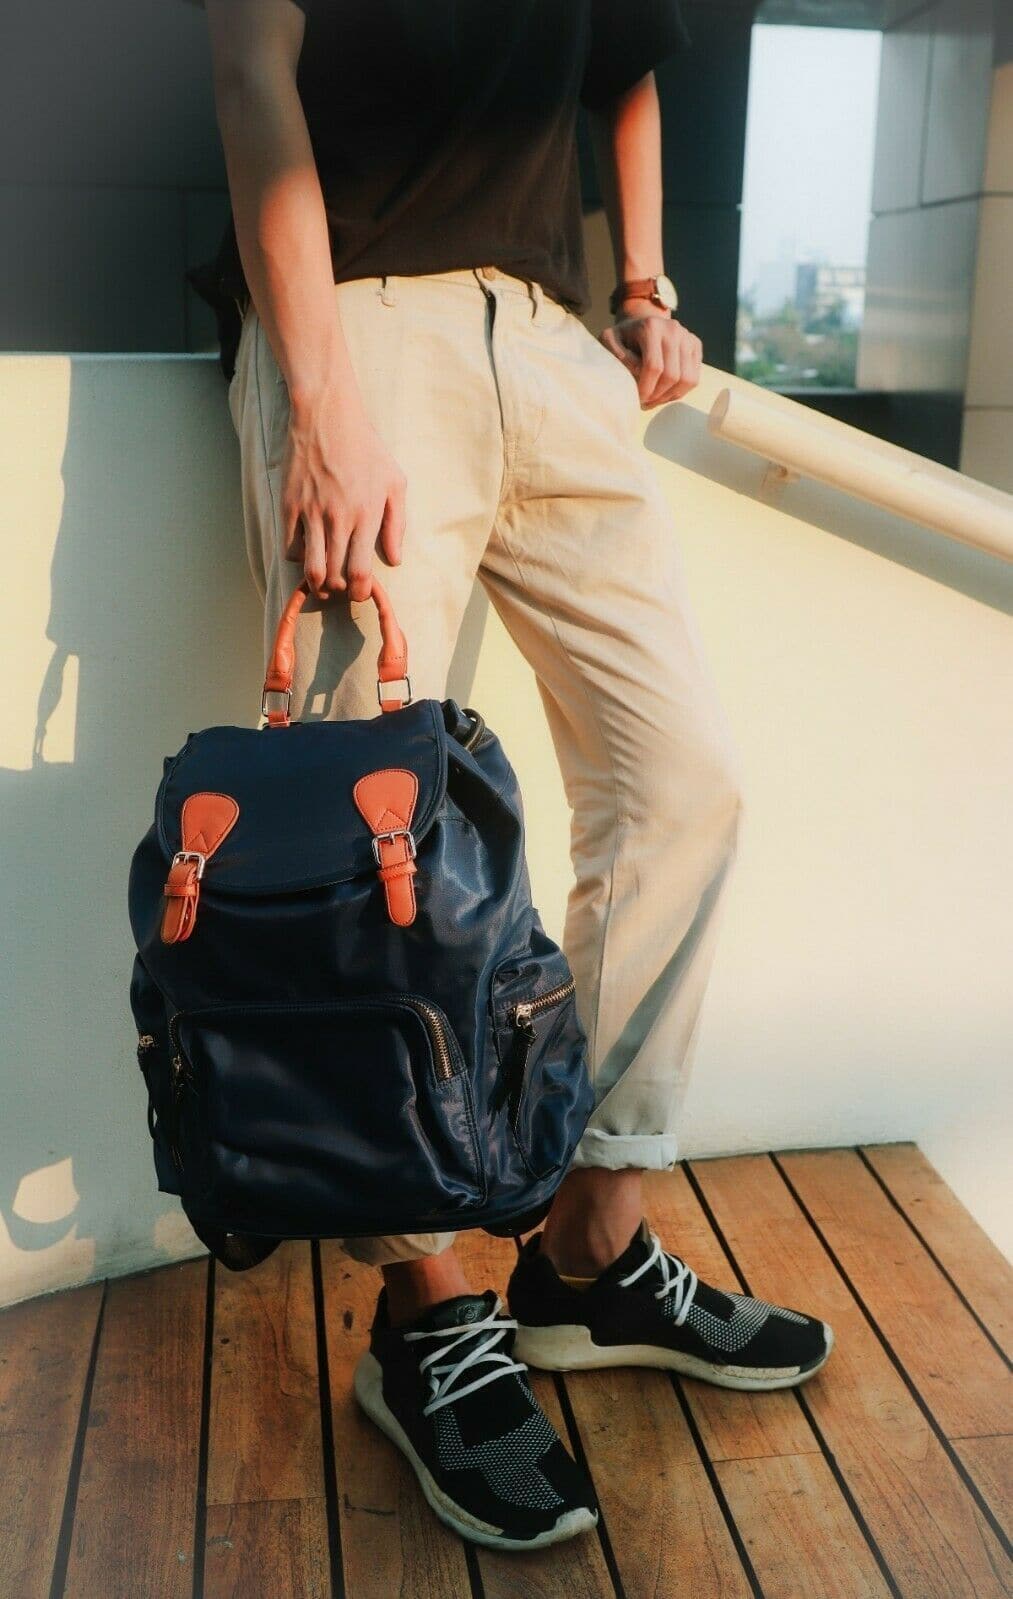 Kuru Kuru クールクール Discovery Backpack Bag Blue Nylon D-81023